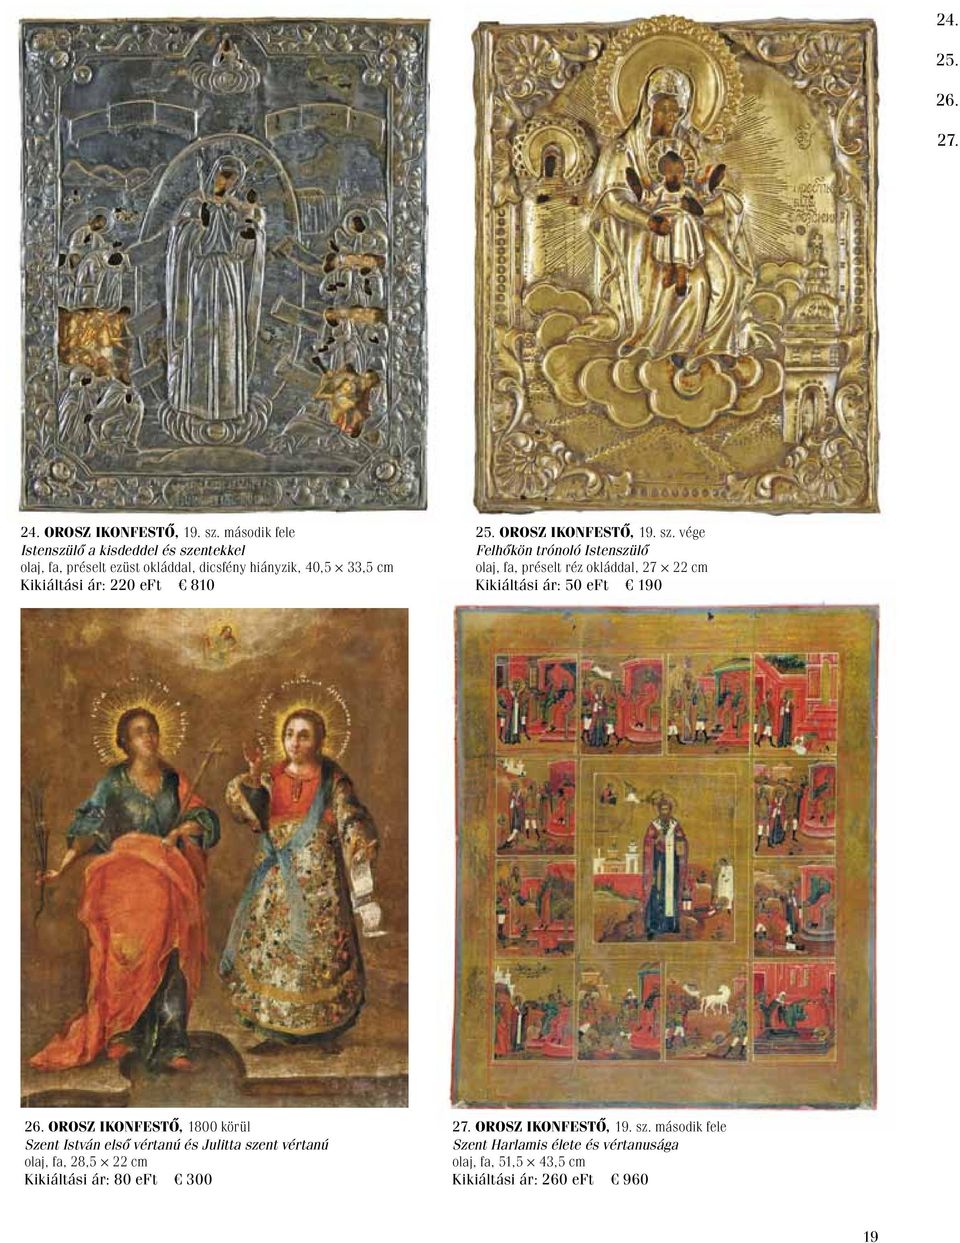 25. Orosz ikonfestő, 19. sz. vége Felhőkön trónoló Istenszülő olaj, fa, préselt réz okláddal, 27 22 cm Kikiáltási ár: 50 eft 190 26.